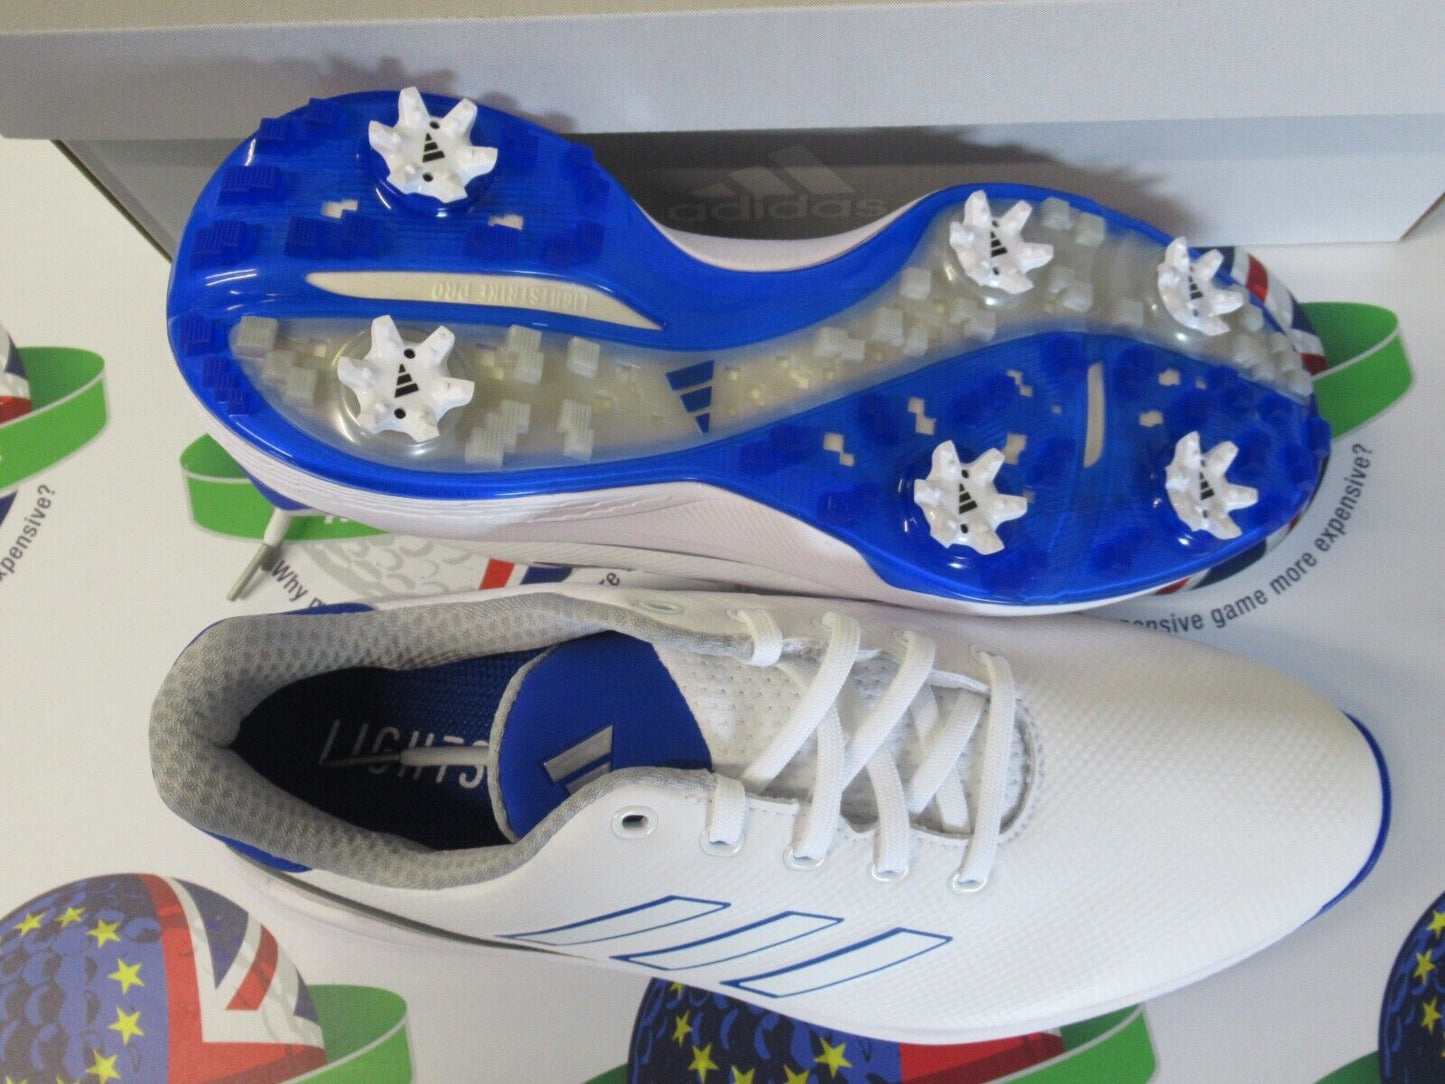 adidas zg23 waterproof golf shoes white/blue uk size 11 medium